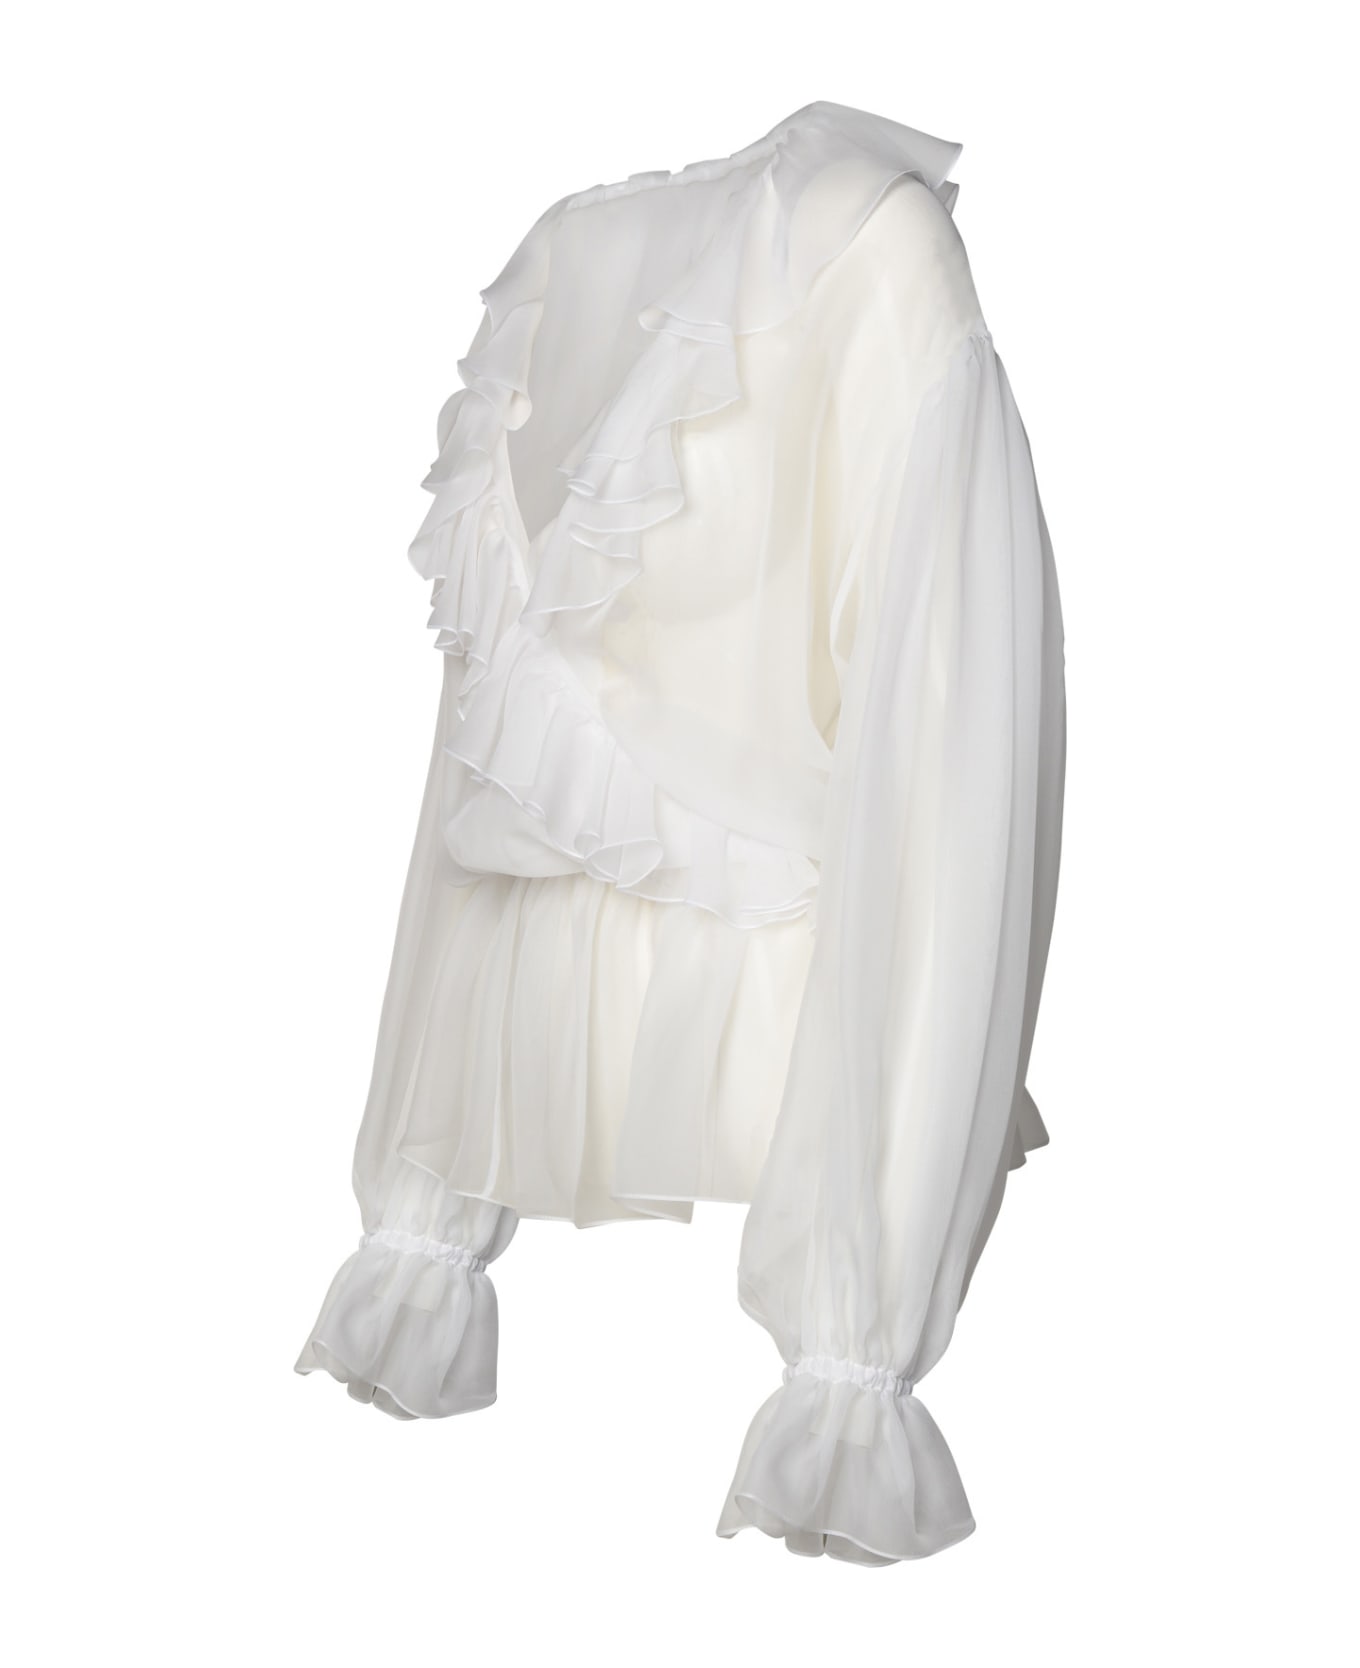 Dolce & Gabbana White Silk Shirt - Bianco